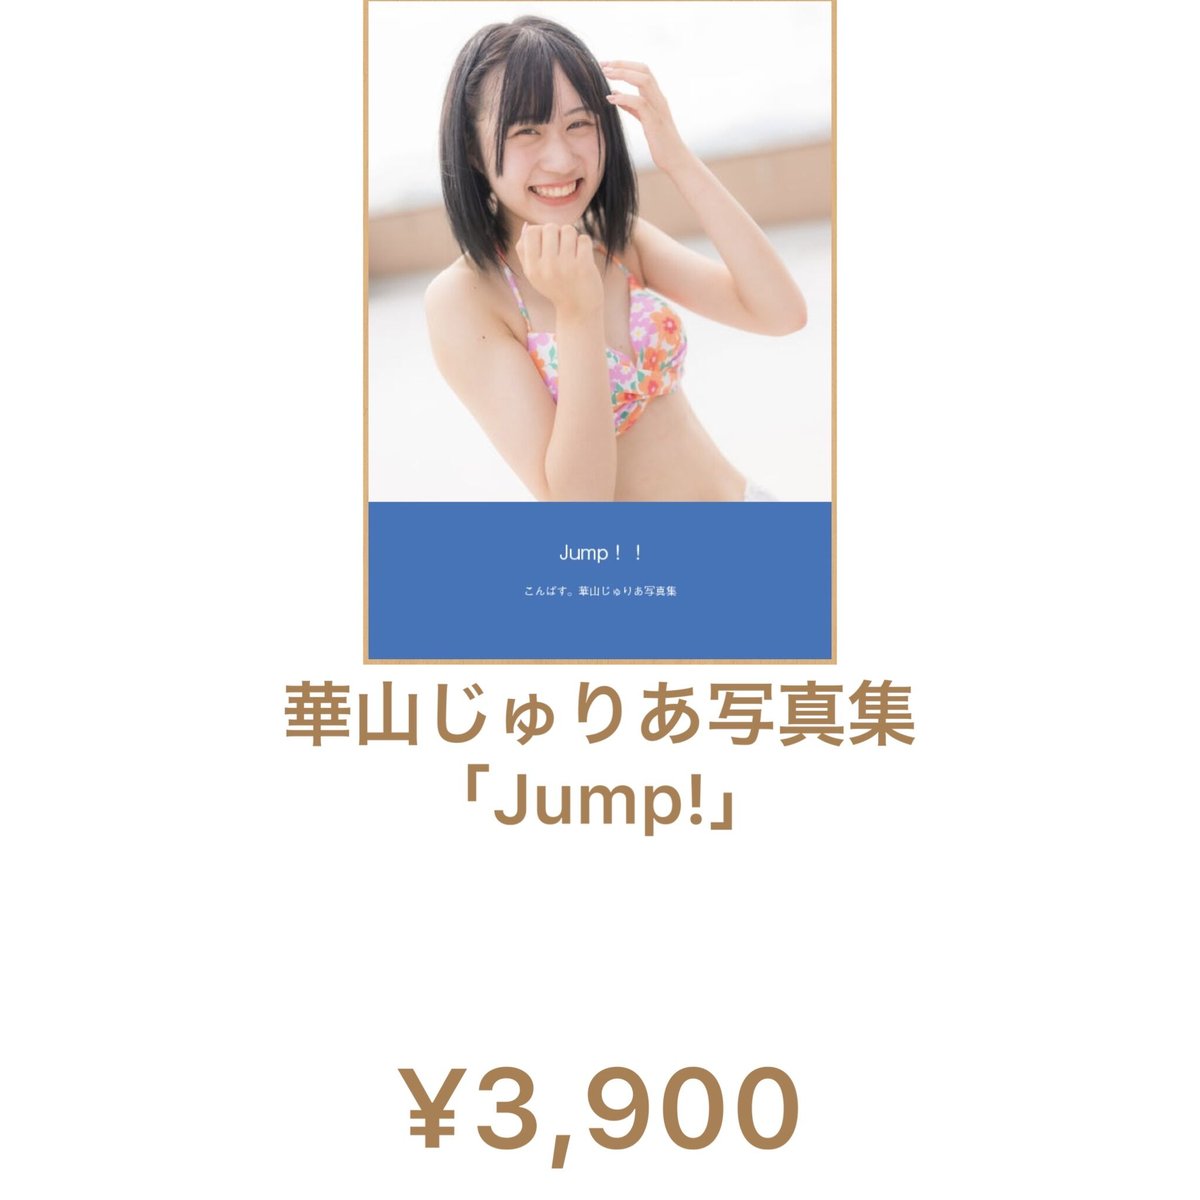 華山じゅりあ写真集「Jump!」 | くるーず〜CRUiSE! GOODS STORE